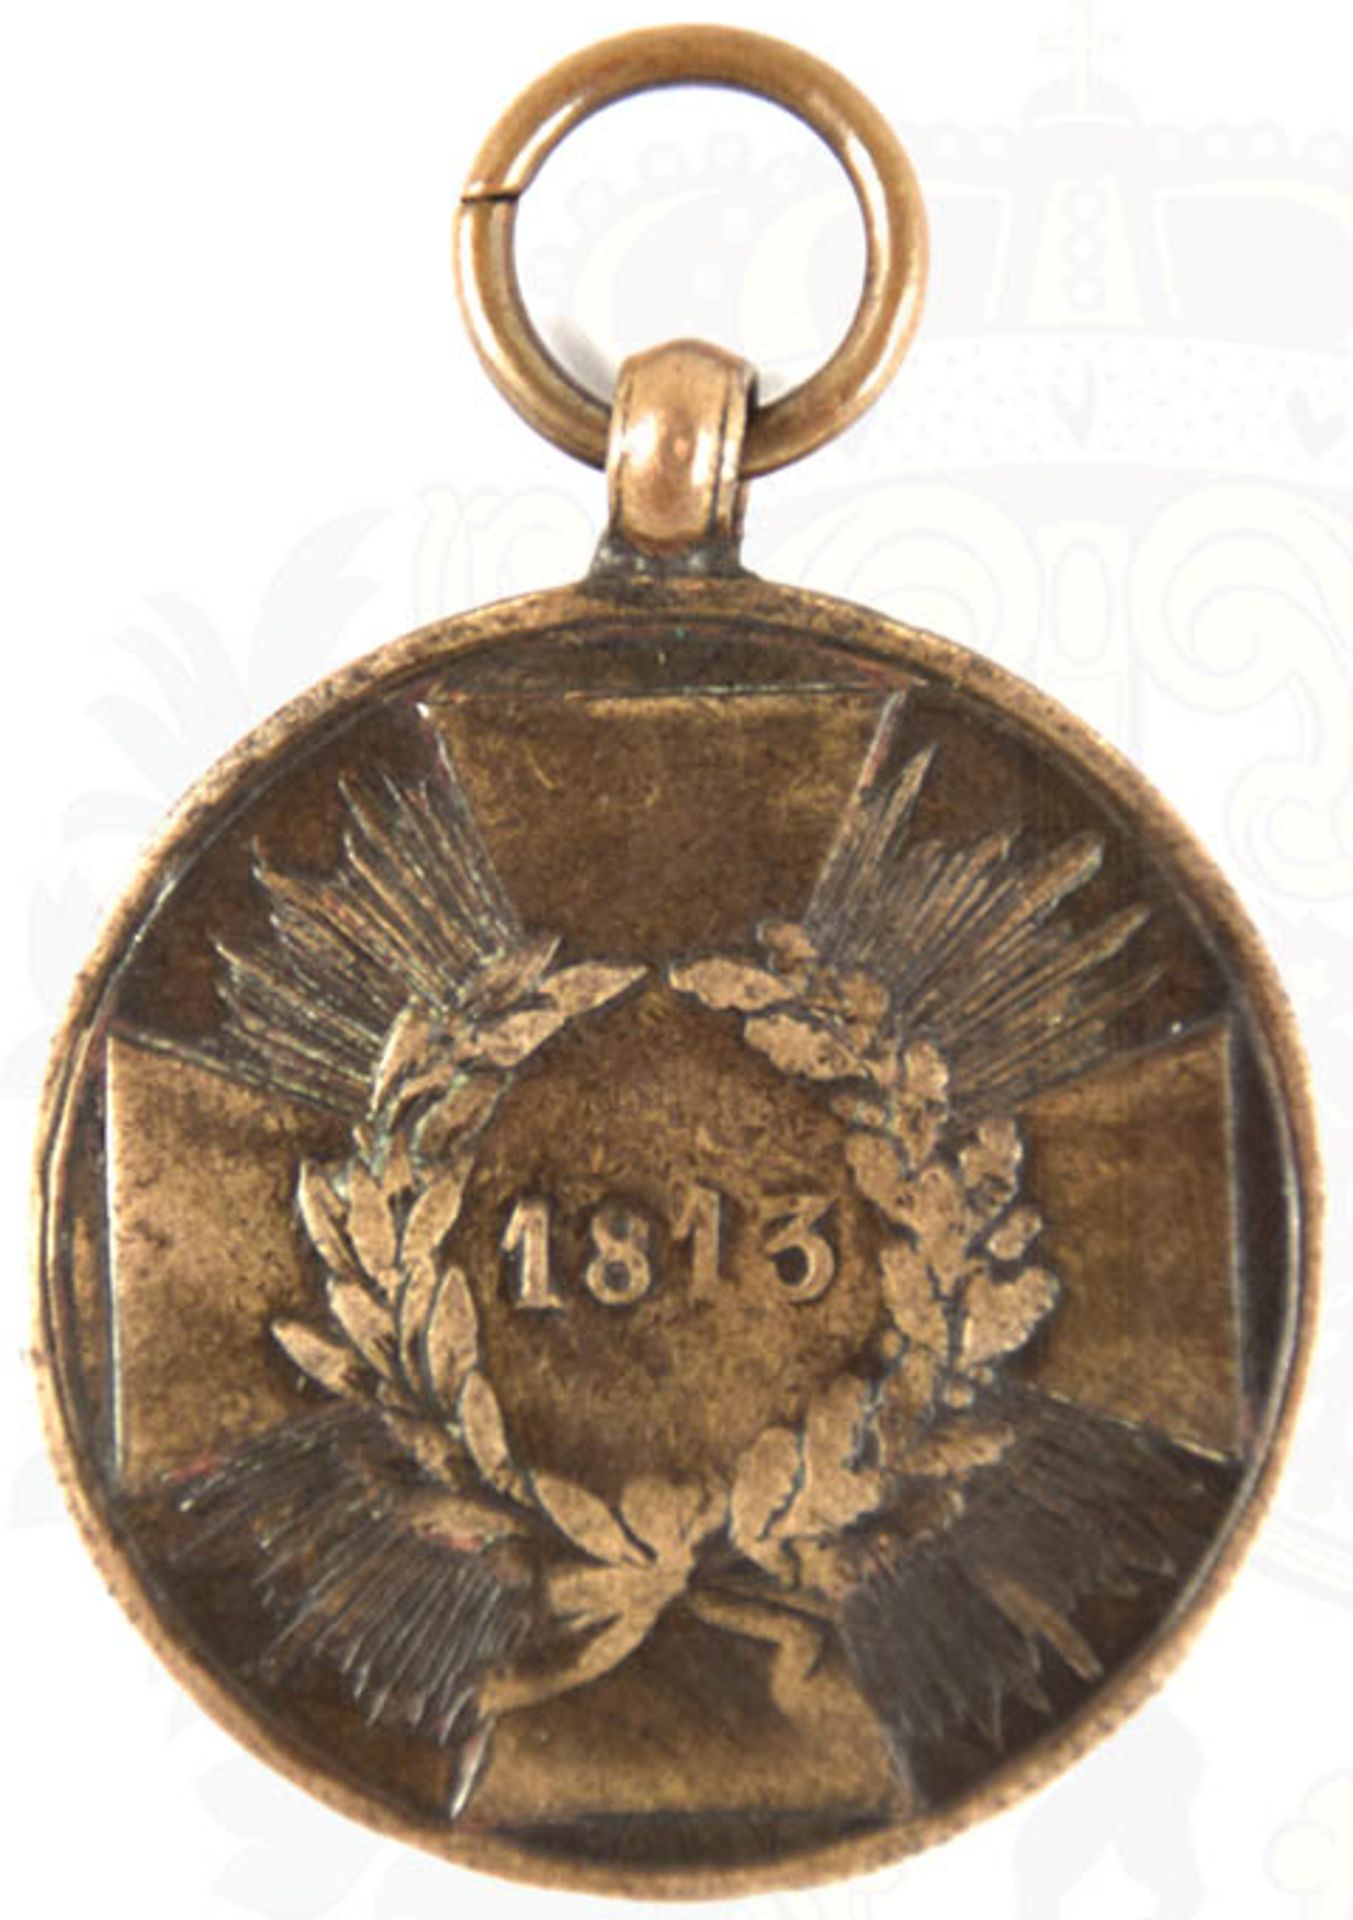 KRIEGSDENKMÜNZE 1813, Geschützbronze mit Randschrift, Kreuz mit scharfkantigen Armen, Patinierung